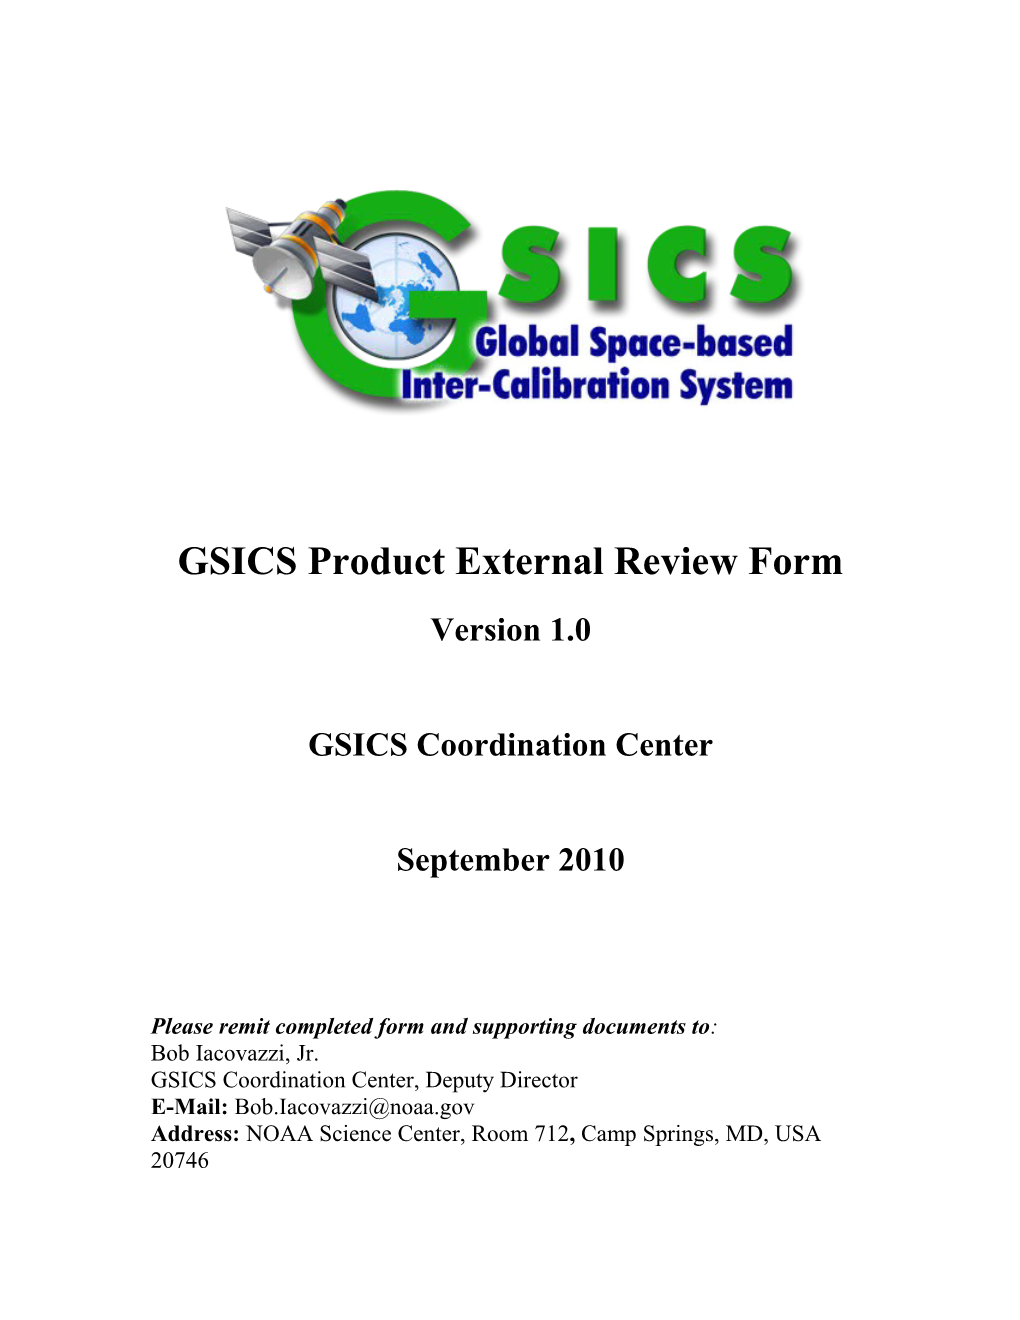 GSICS Product Acceptance Procedure